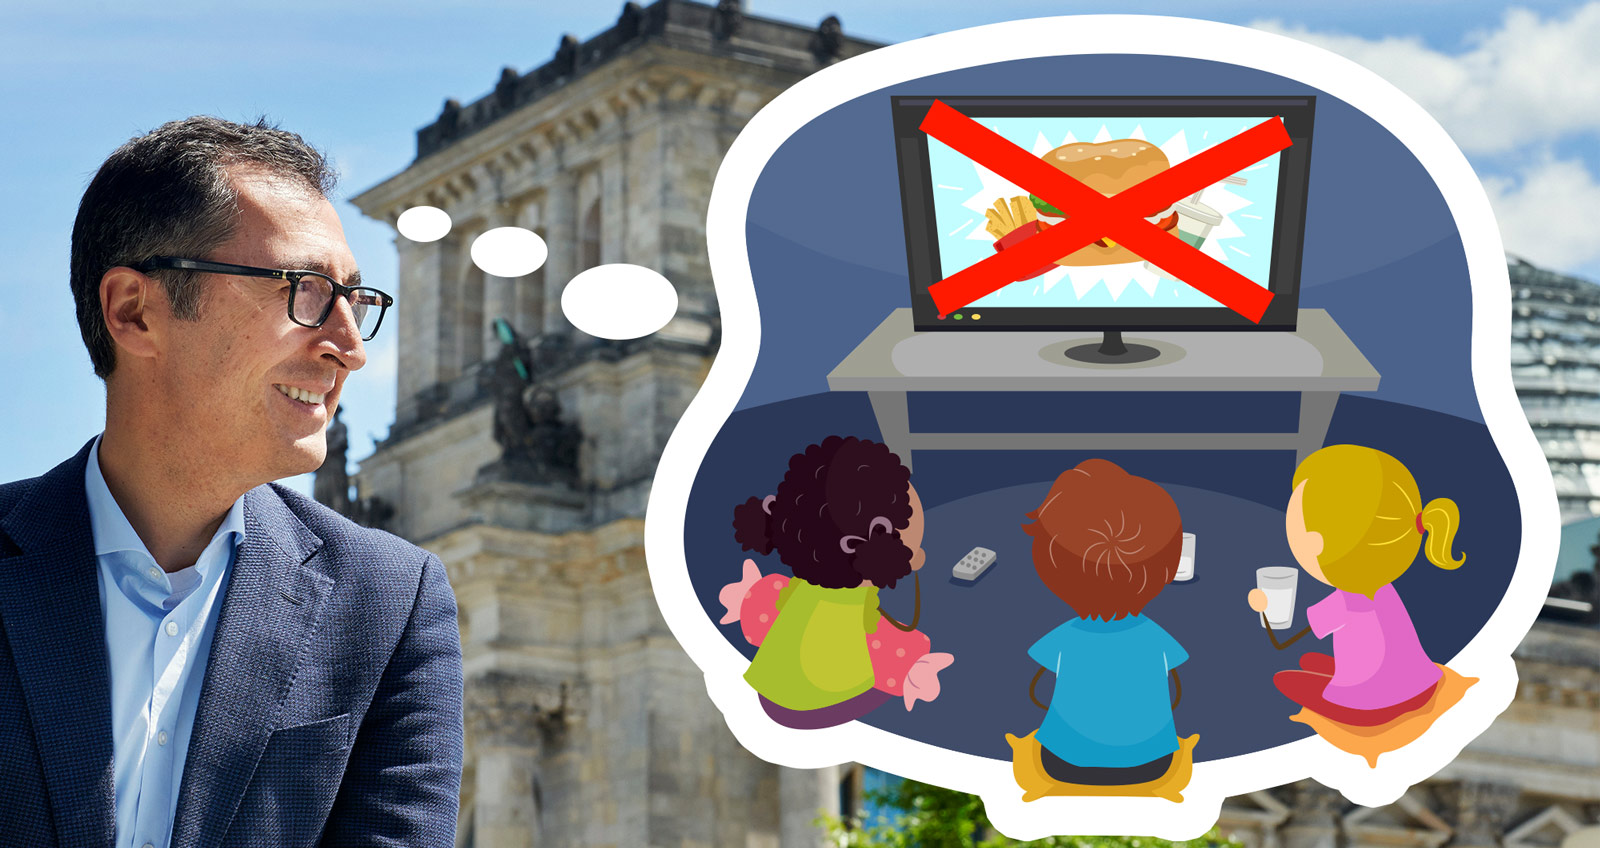 Cem Özdemir vor dem Reichstag, neben ihm eine Gedankenblase in der Kinder vor einem Fernseher sitzen in dem Werbung für Fast Food gezeigt wird. Der Fernseher ist mit roten Balken durchgestrichen.